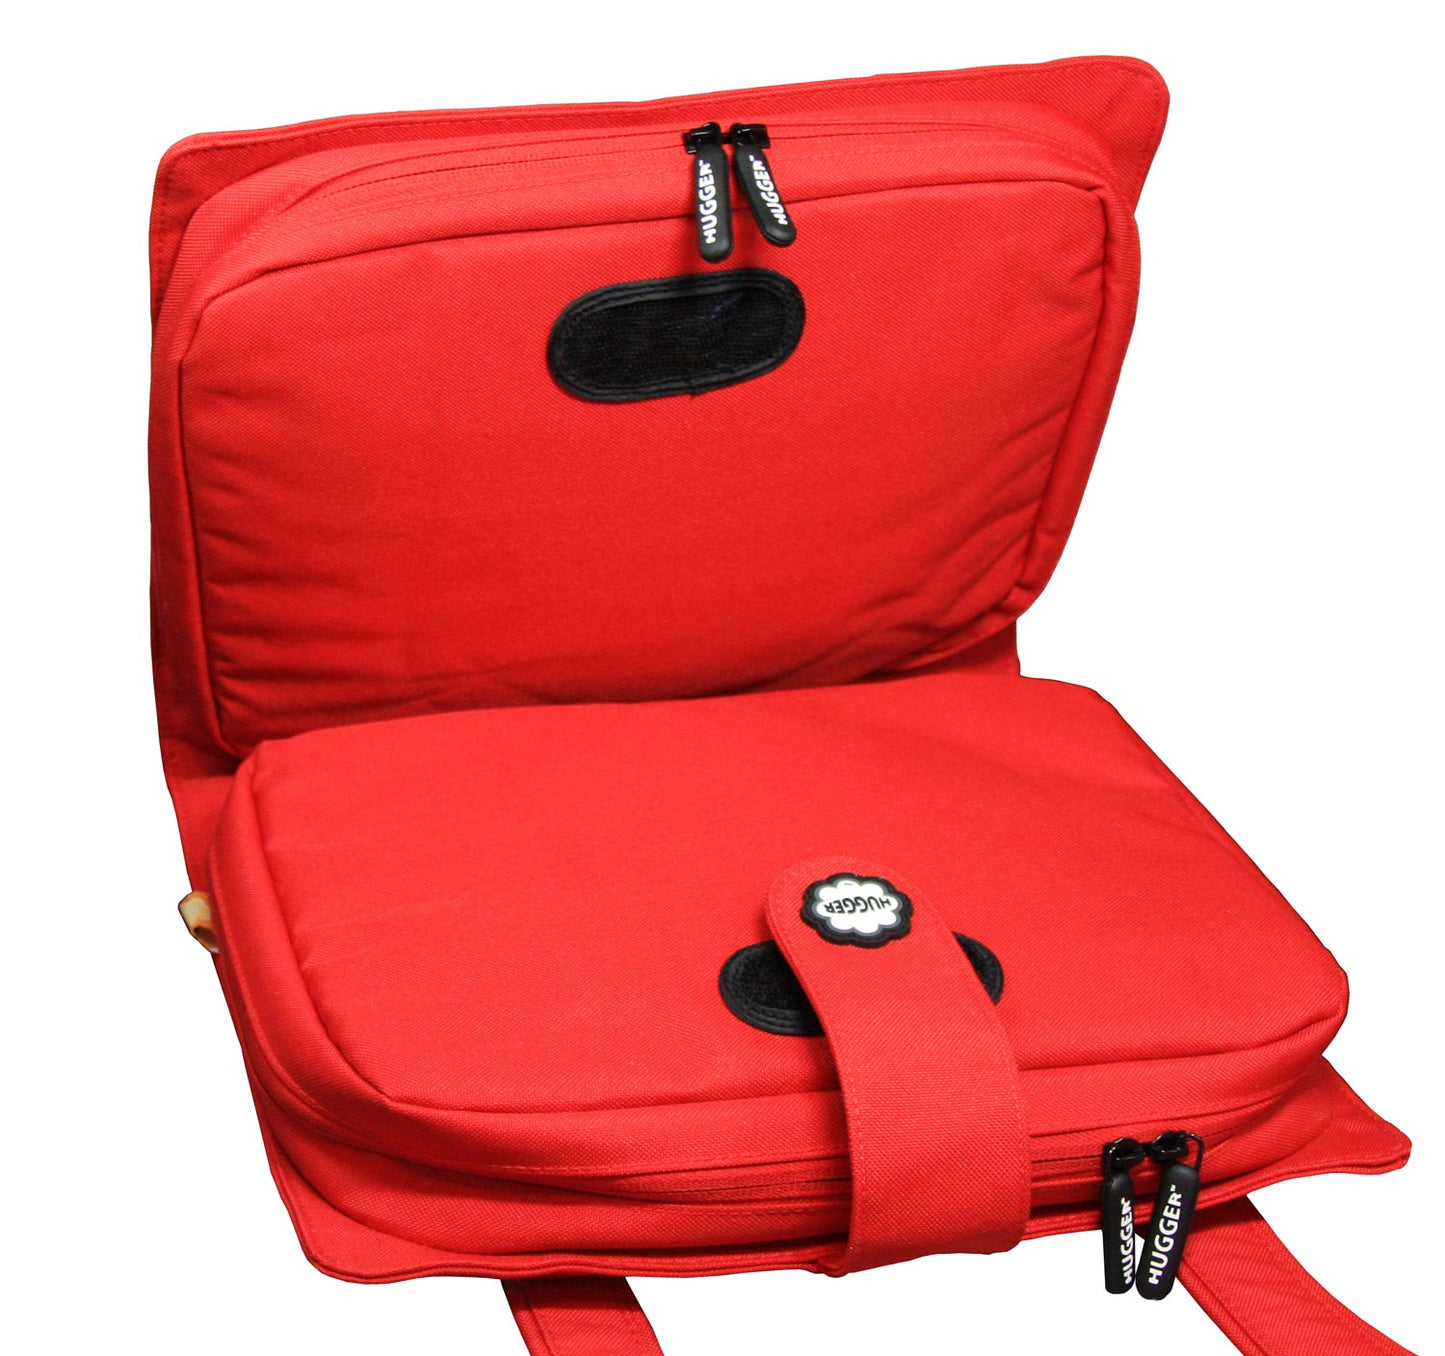 Die rote Hugger Laptoptasche 360L-126 bietet eine hohe Funktionalität und ist ein Hingucker auf Arbeit, in der Schule und in der Freizeit.